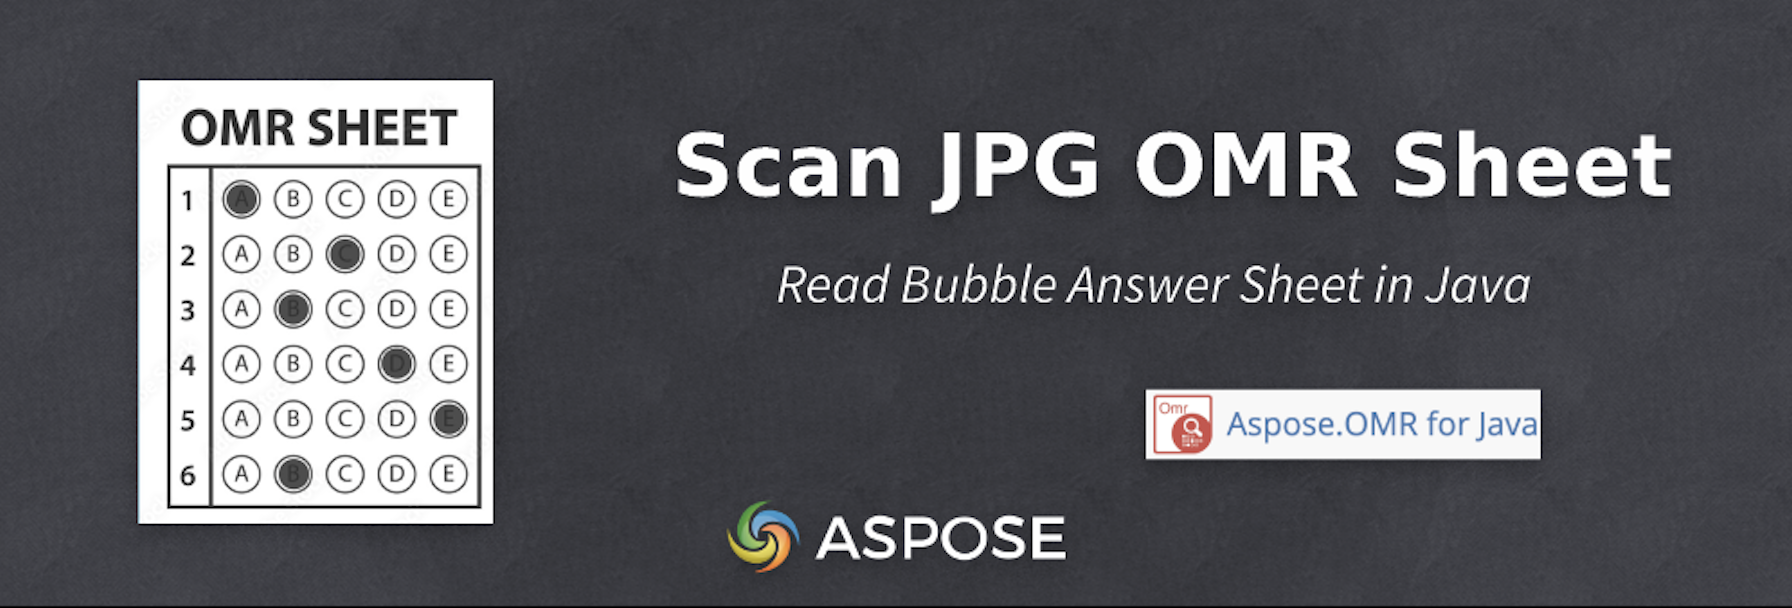 Naskenujte bublinový odpovědní list v Java - OMR list JPG